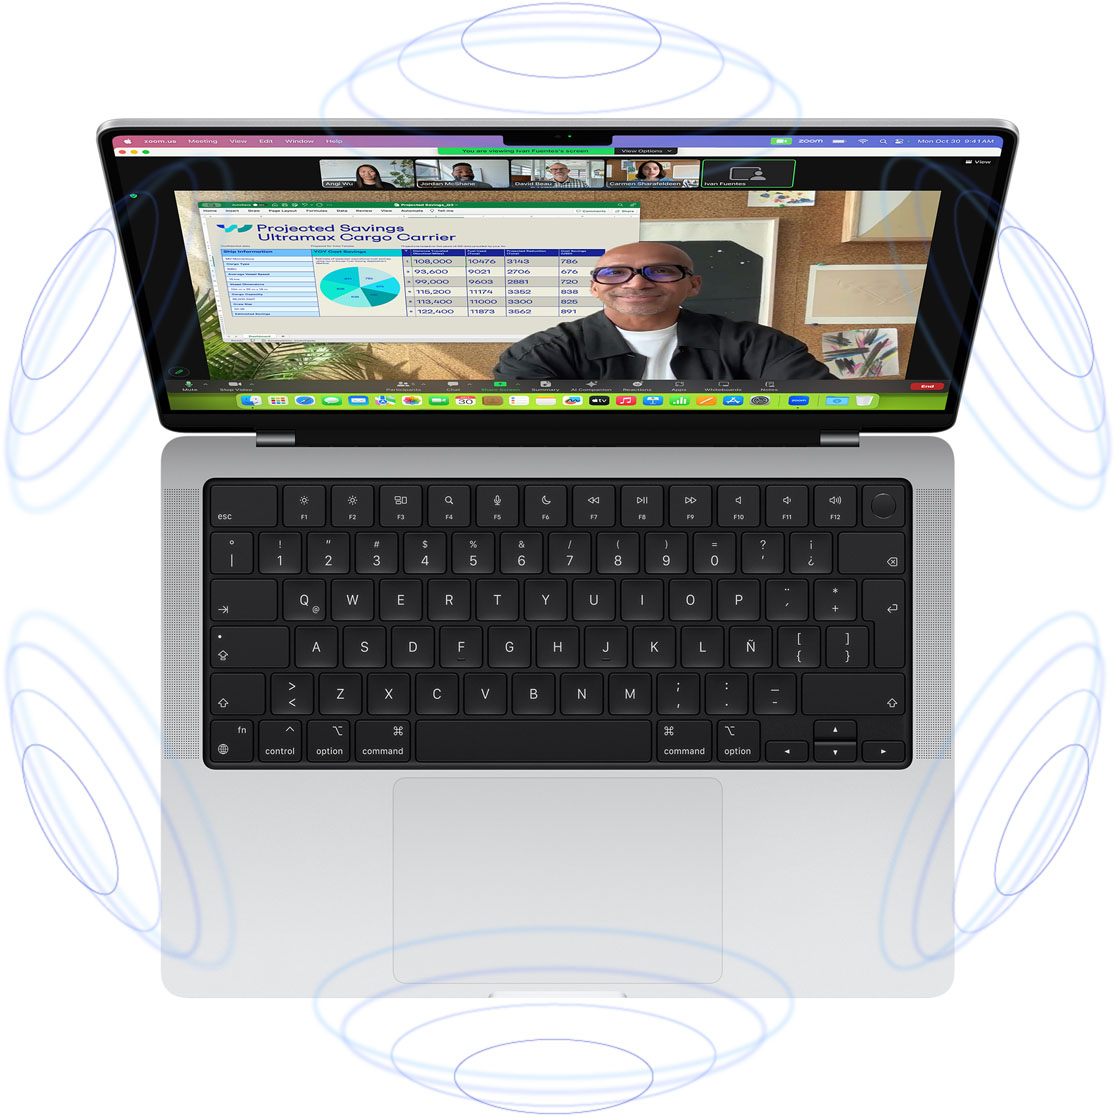 Videollamada de FaceTime en una MacBook Pro, rodeada de dibujos de círculos azules para transmitir la sensación 3D del Audio Espacial